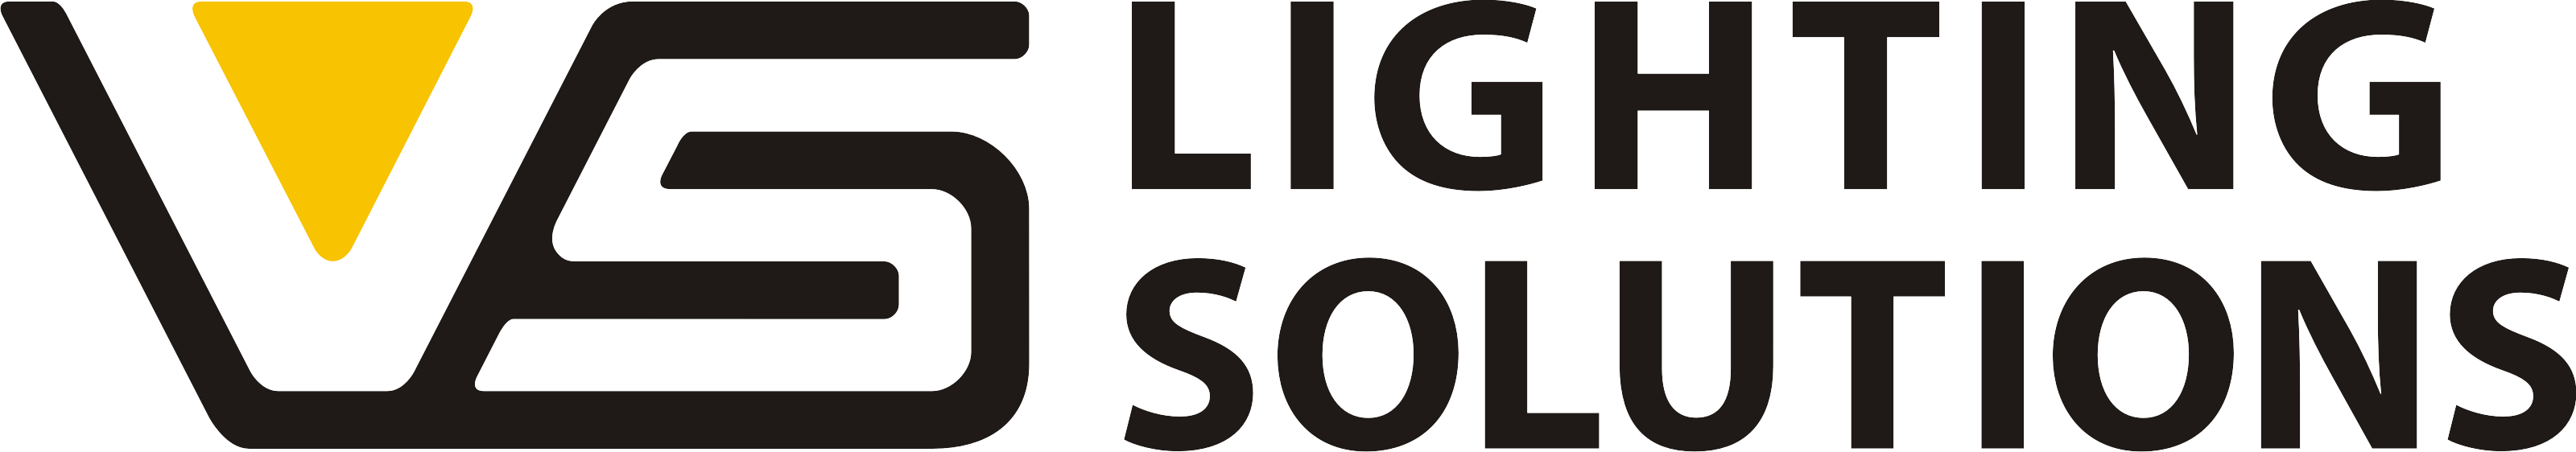 vsneu lighting solutions logo